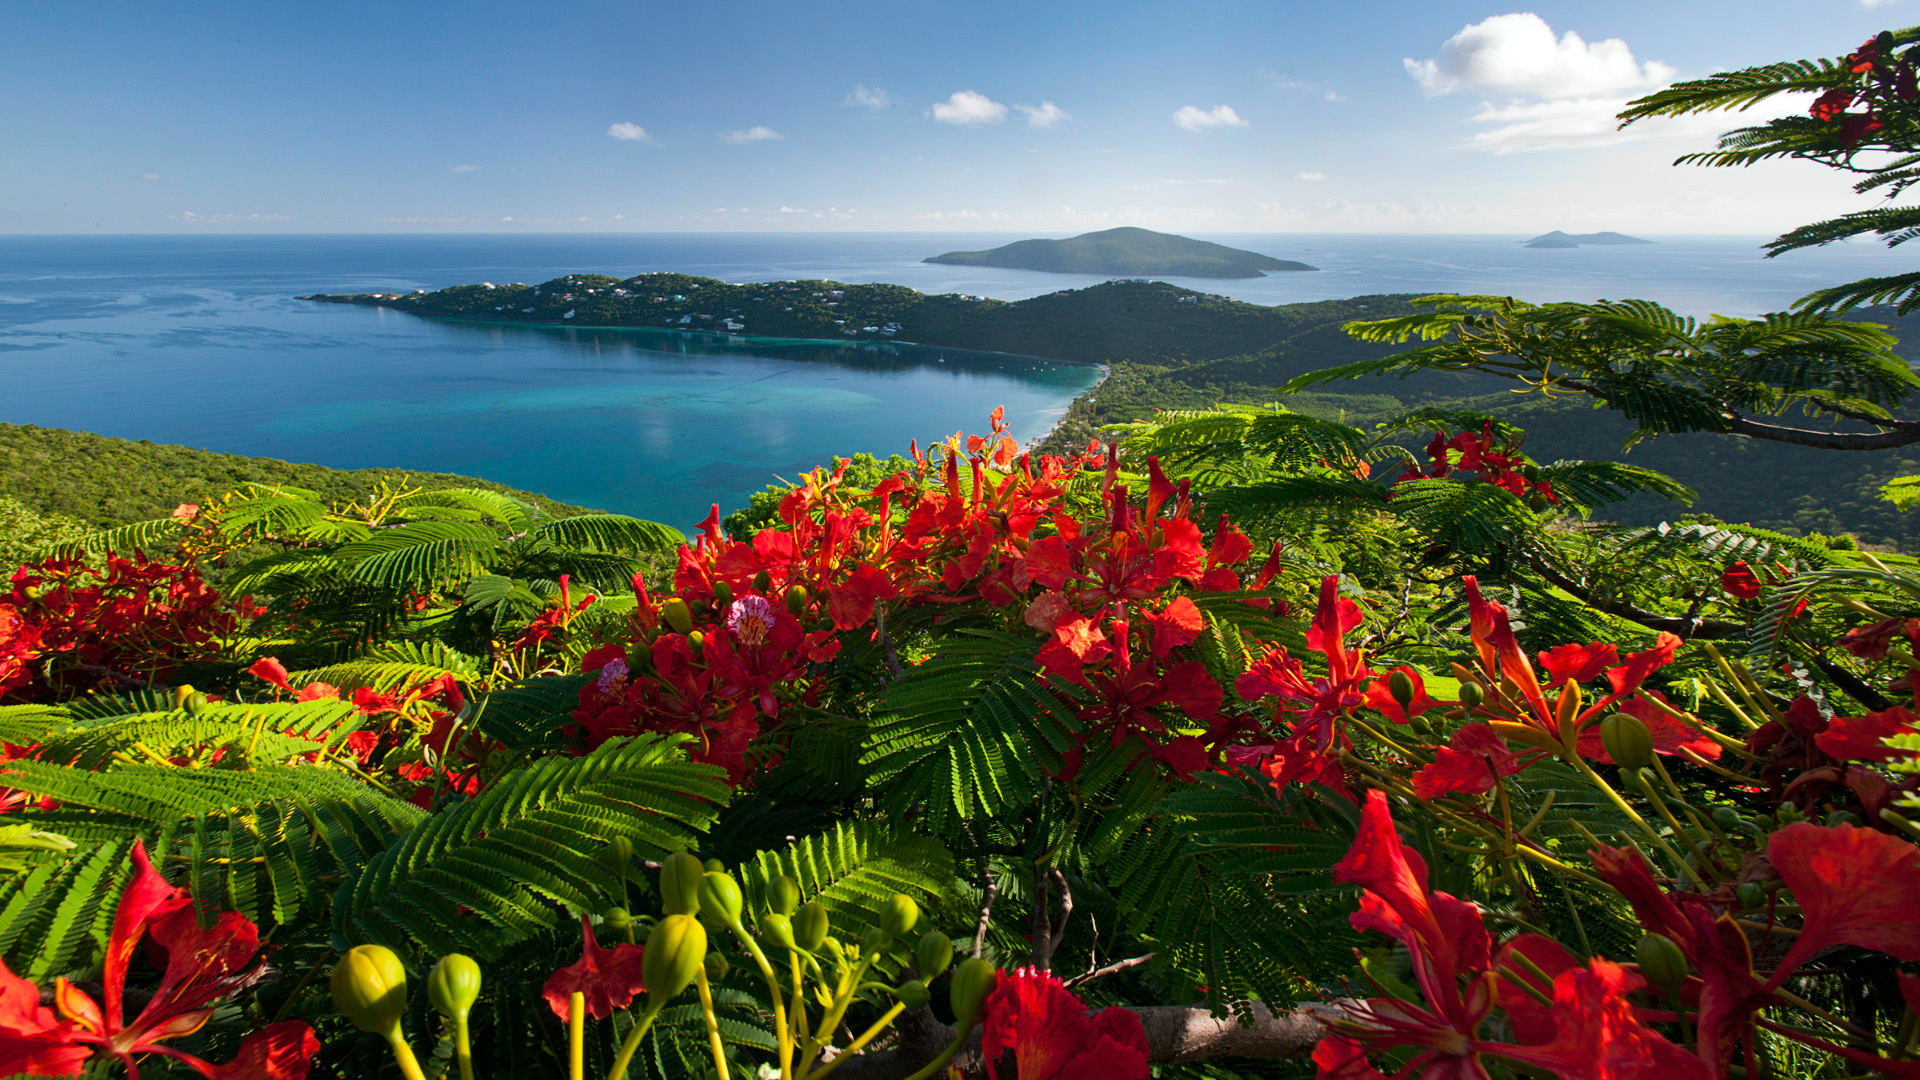 Яркие красные цветы среди зеленых листьев папоротника на пригорке Карибской морской бухты, Барбадос / Barbados